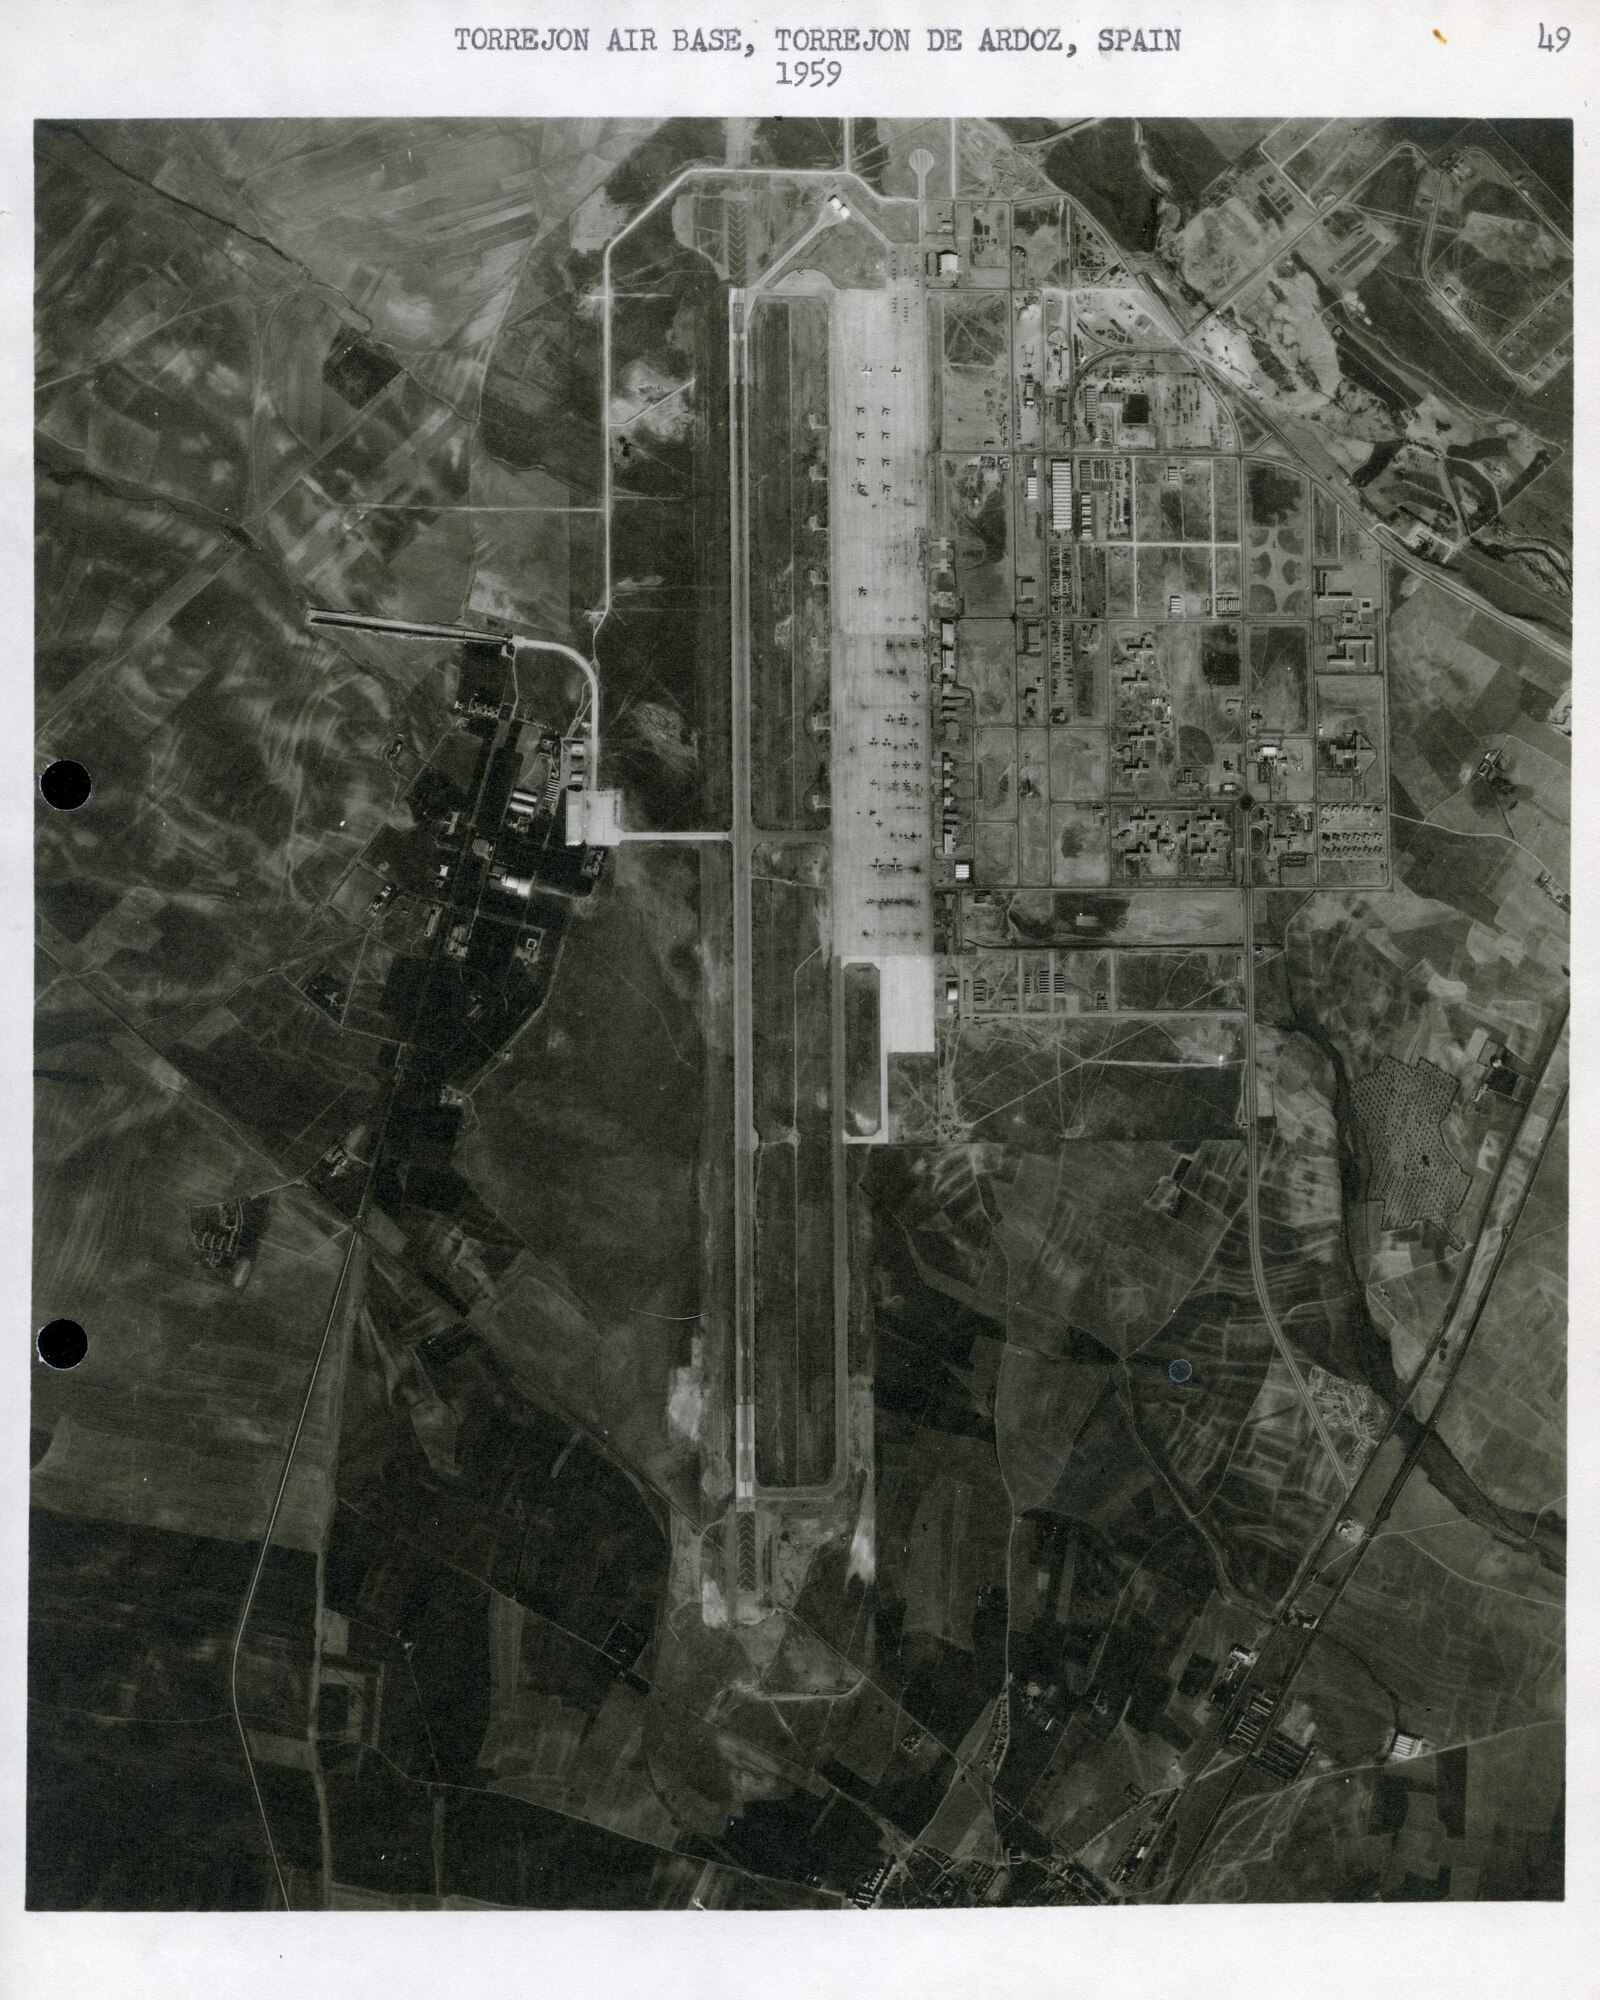 A photo of an air base.